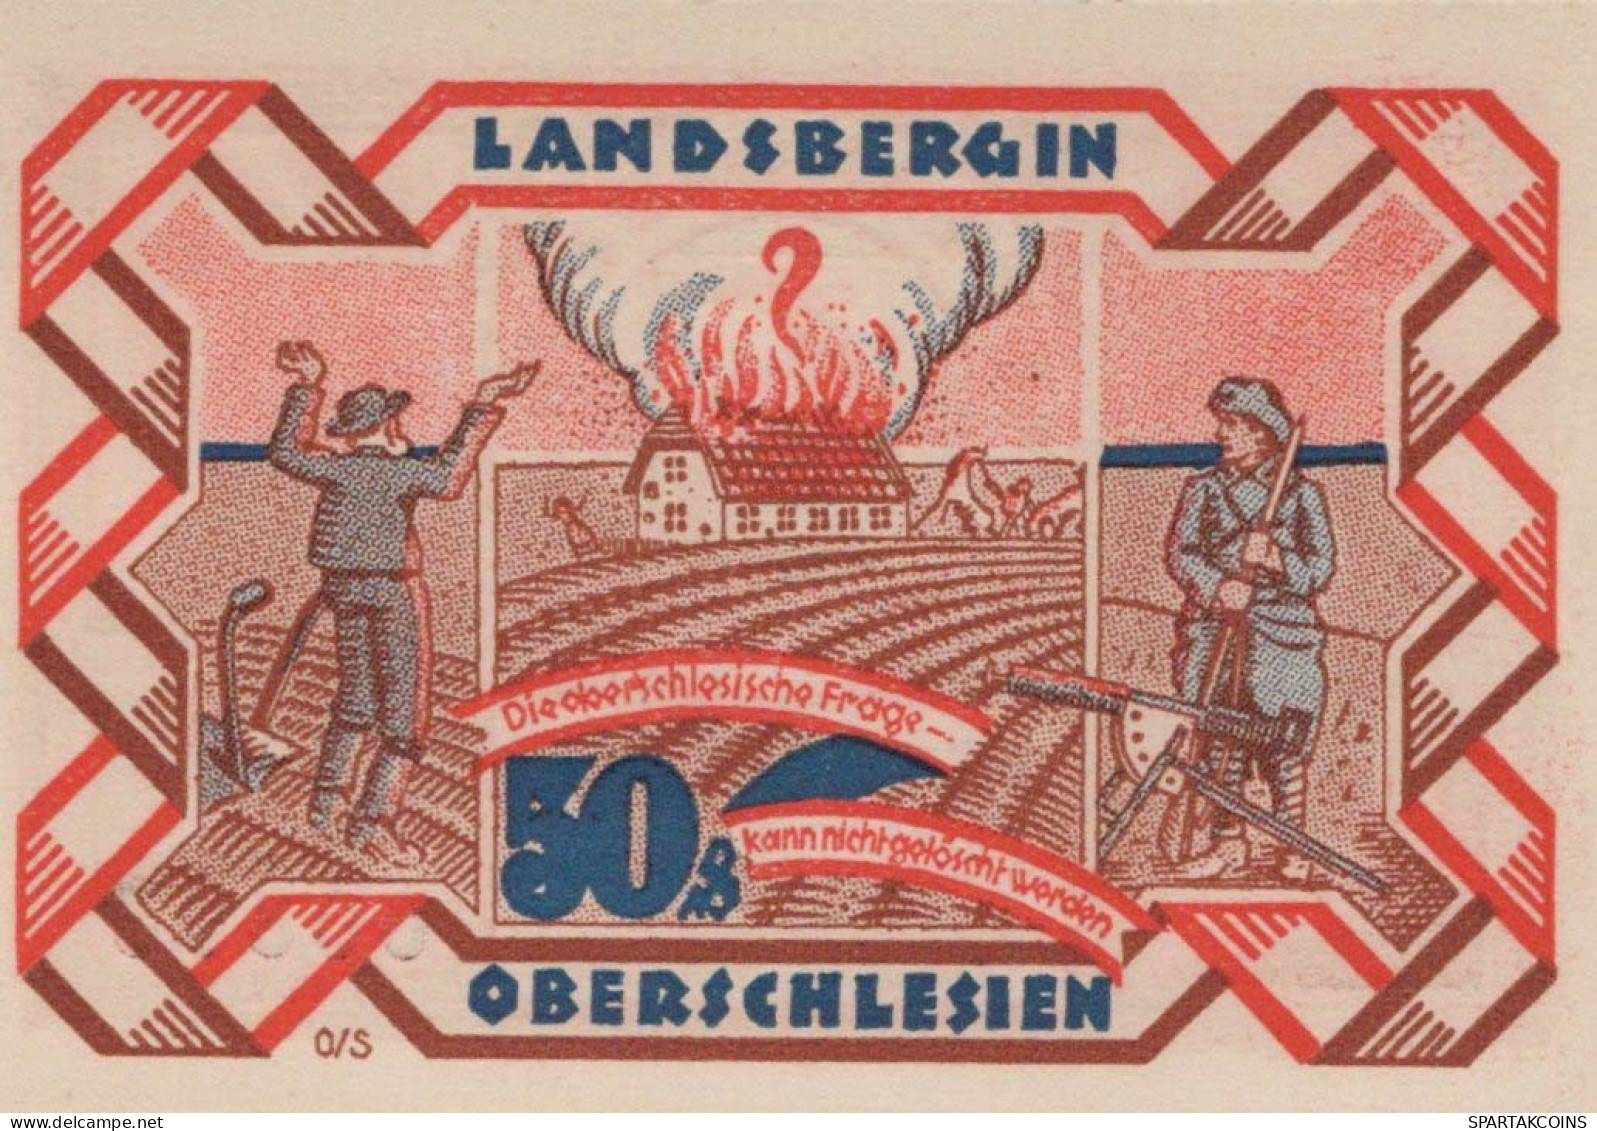 50 PFENNIG 1922 Stadt LANDSBERG OBERSCHLESIEN UNC DEUTSCHLAND #PB931 - [11] Local Banknote Issues